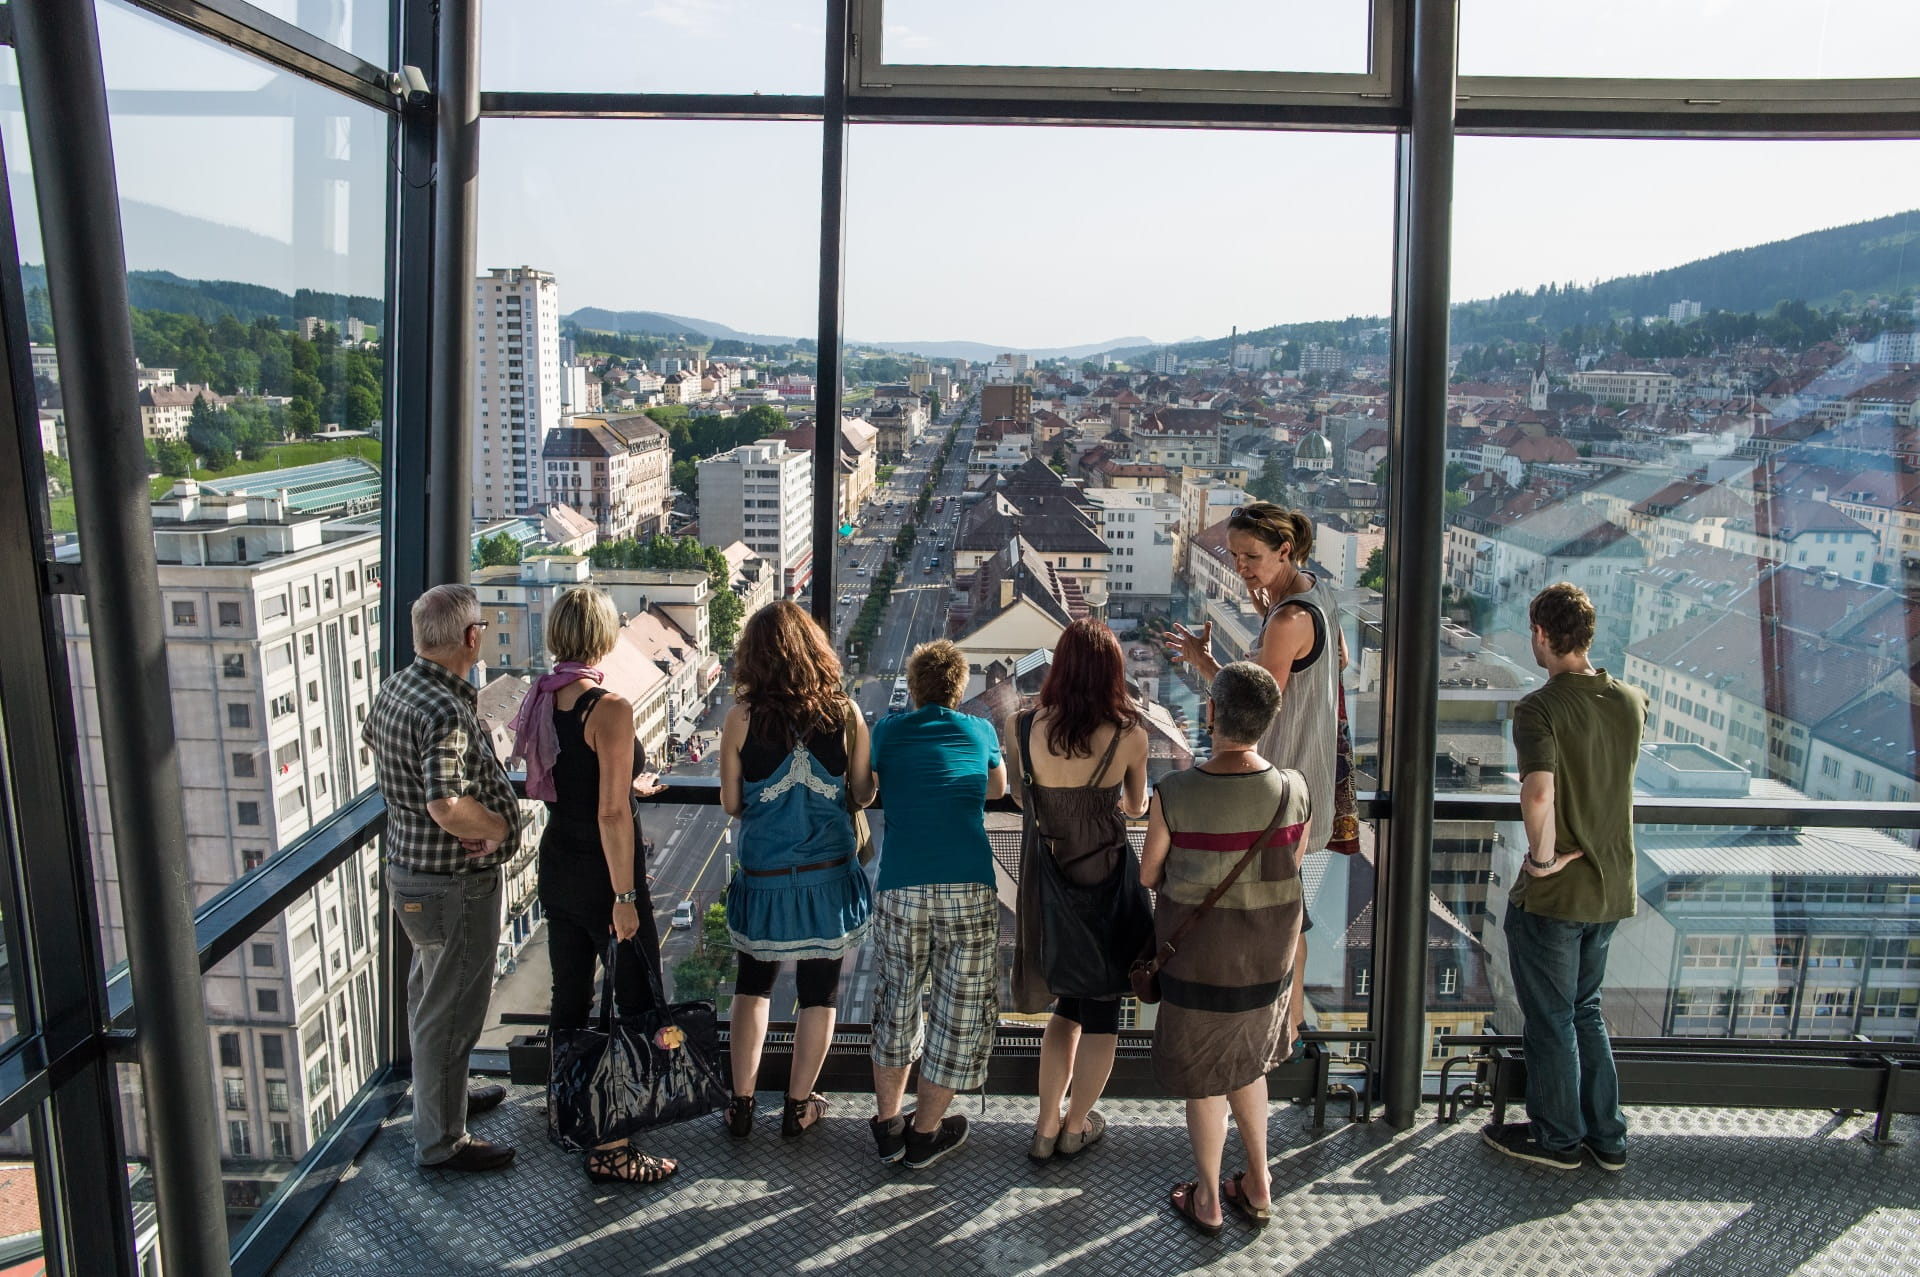 Un petit groupe se trouve sur le pont d'observation de la Tour de l'Espacité à La Chaux de Fonds. La ville est visible derrière les grandes fenêtres panoramiques. 